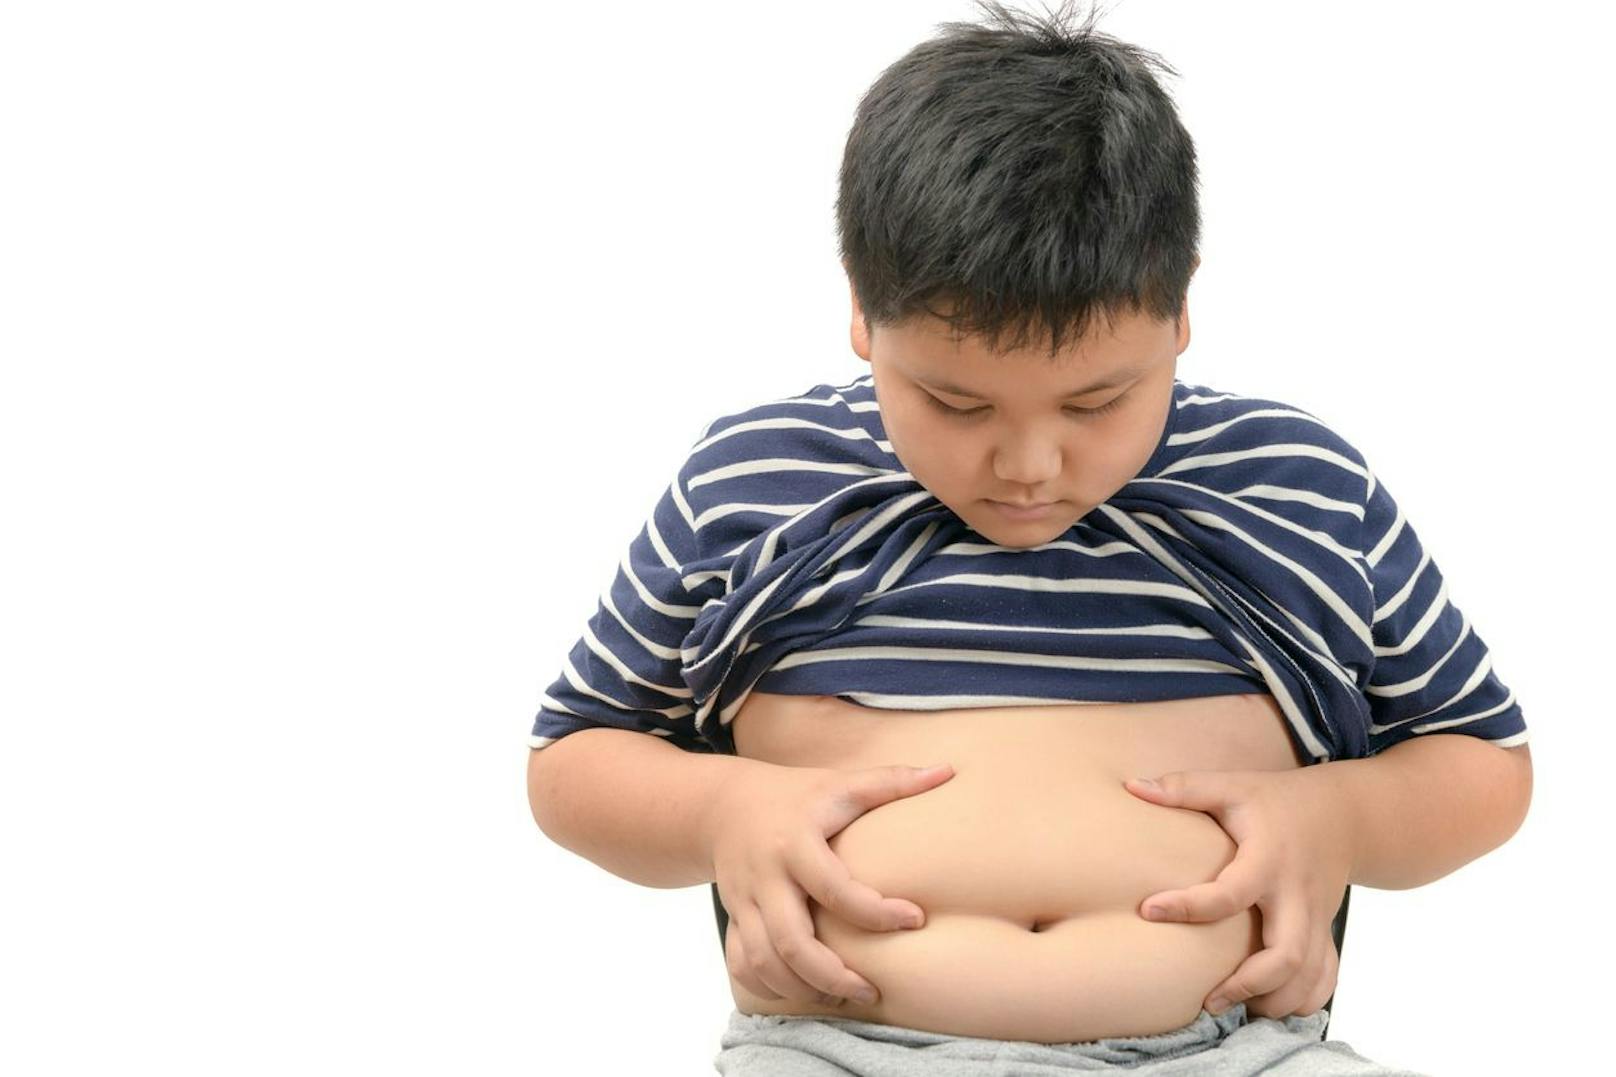 Anstieg von übergewichtigen Kindern in der Pandemie